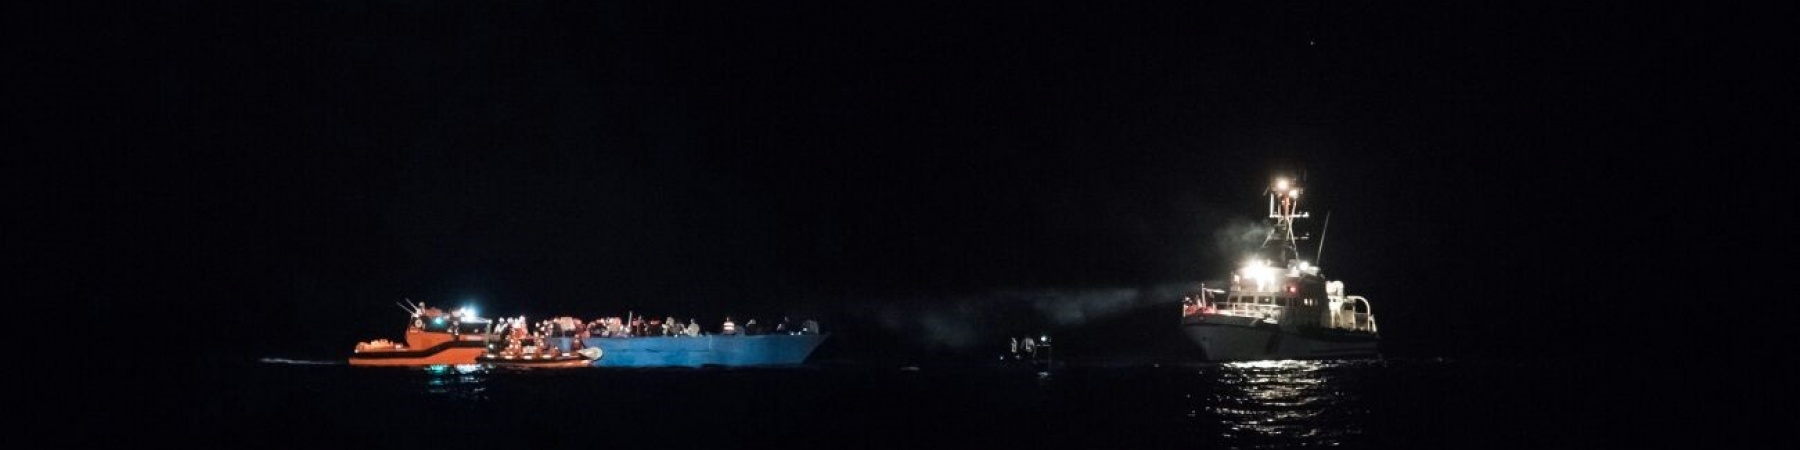 nave nel mediterraneo di notte